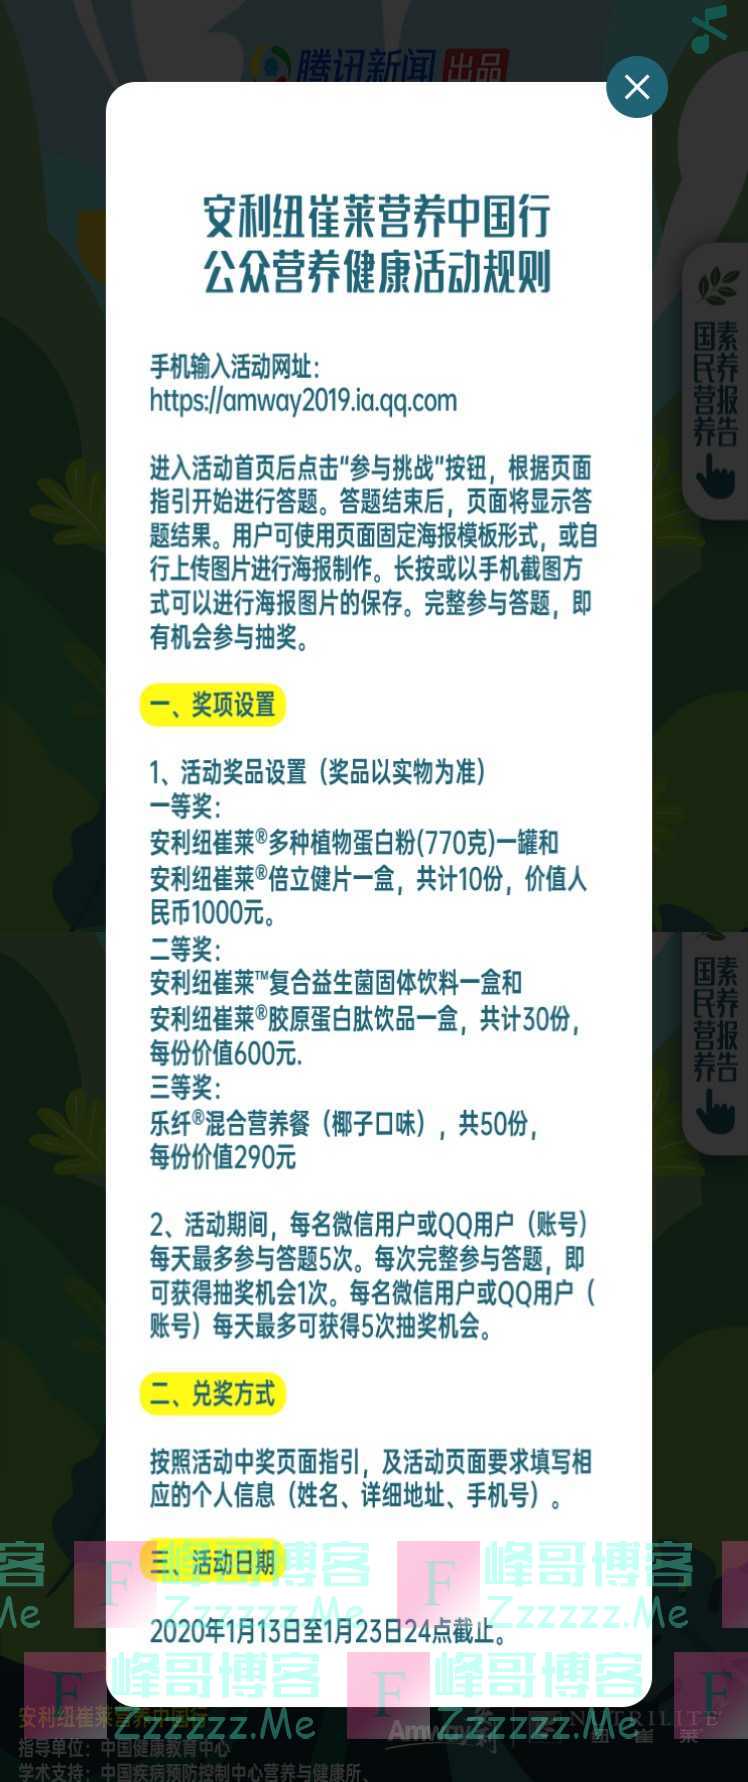 纽崔莱营养中国行公众营养健康活动（1月23日截止）